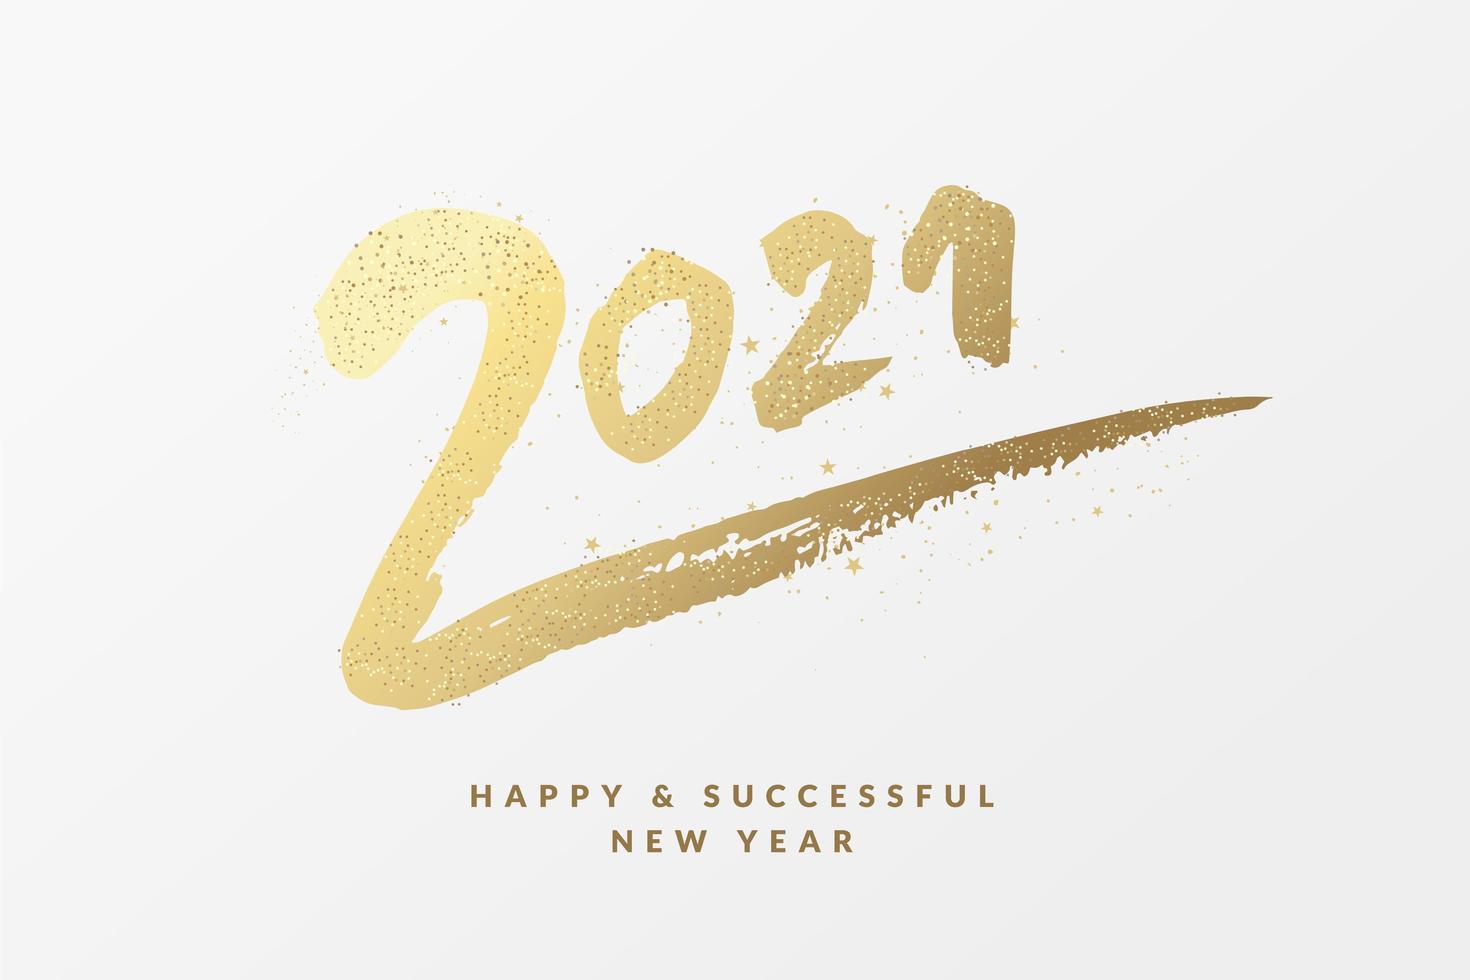 Stt chúc mừng năm mới 2021